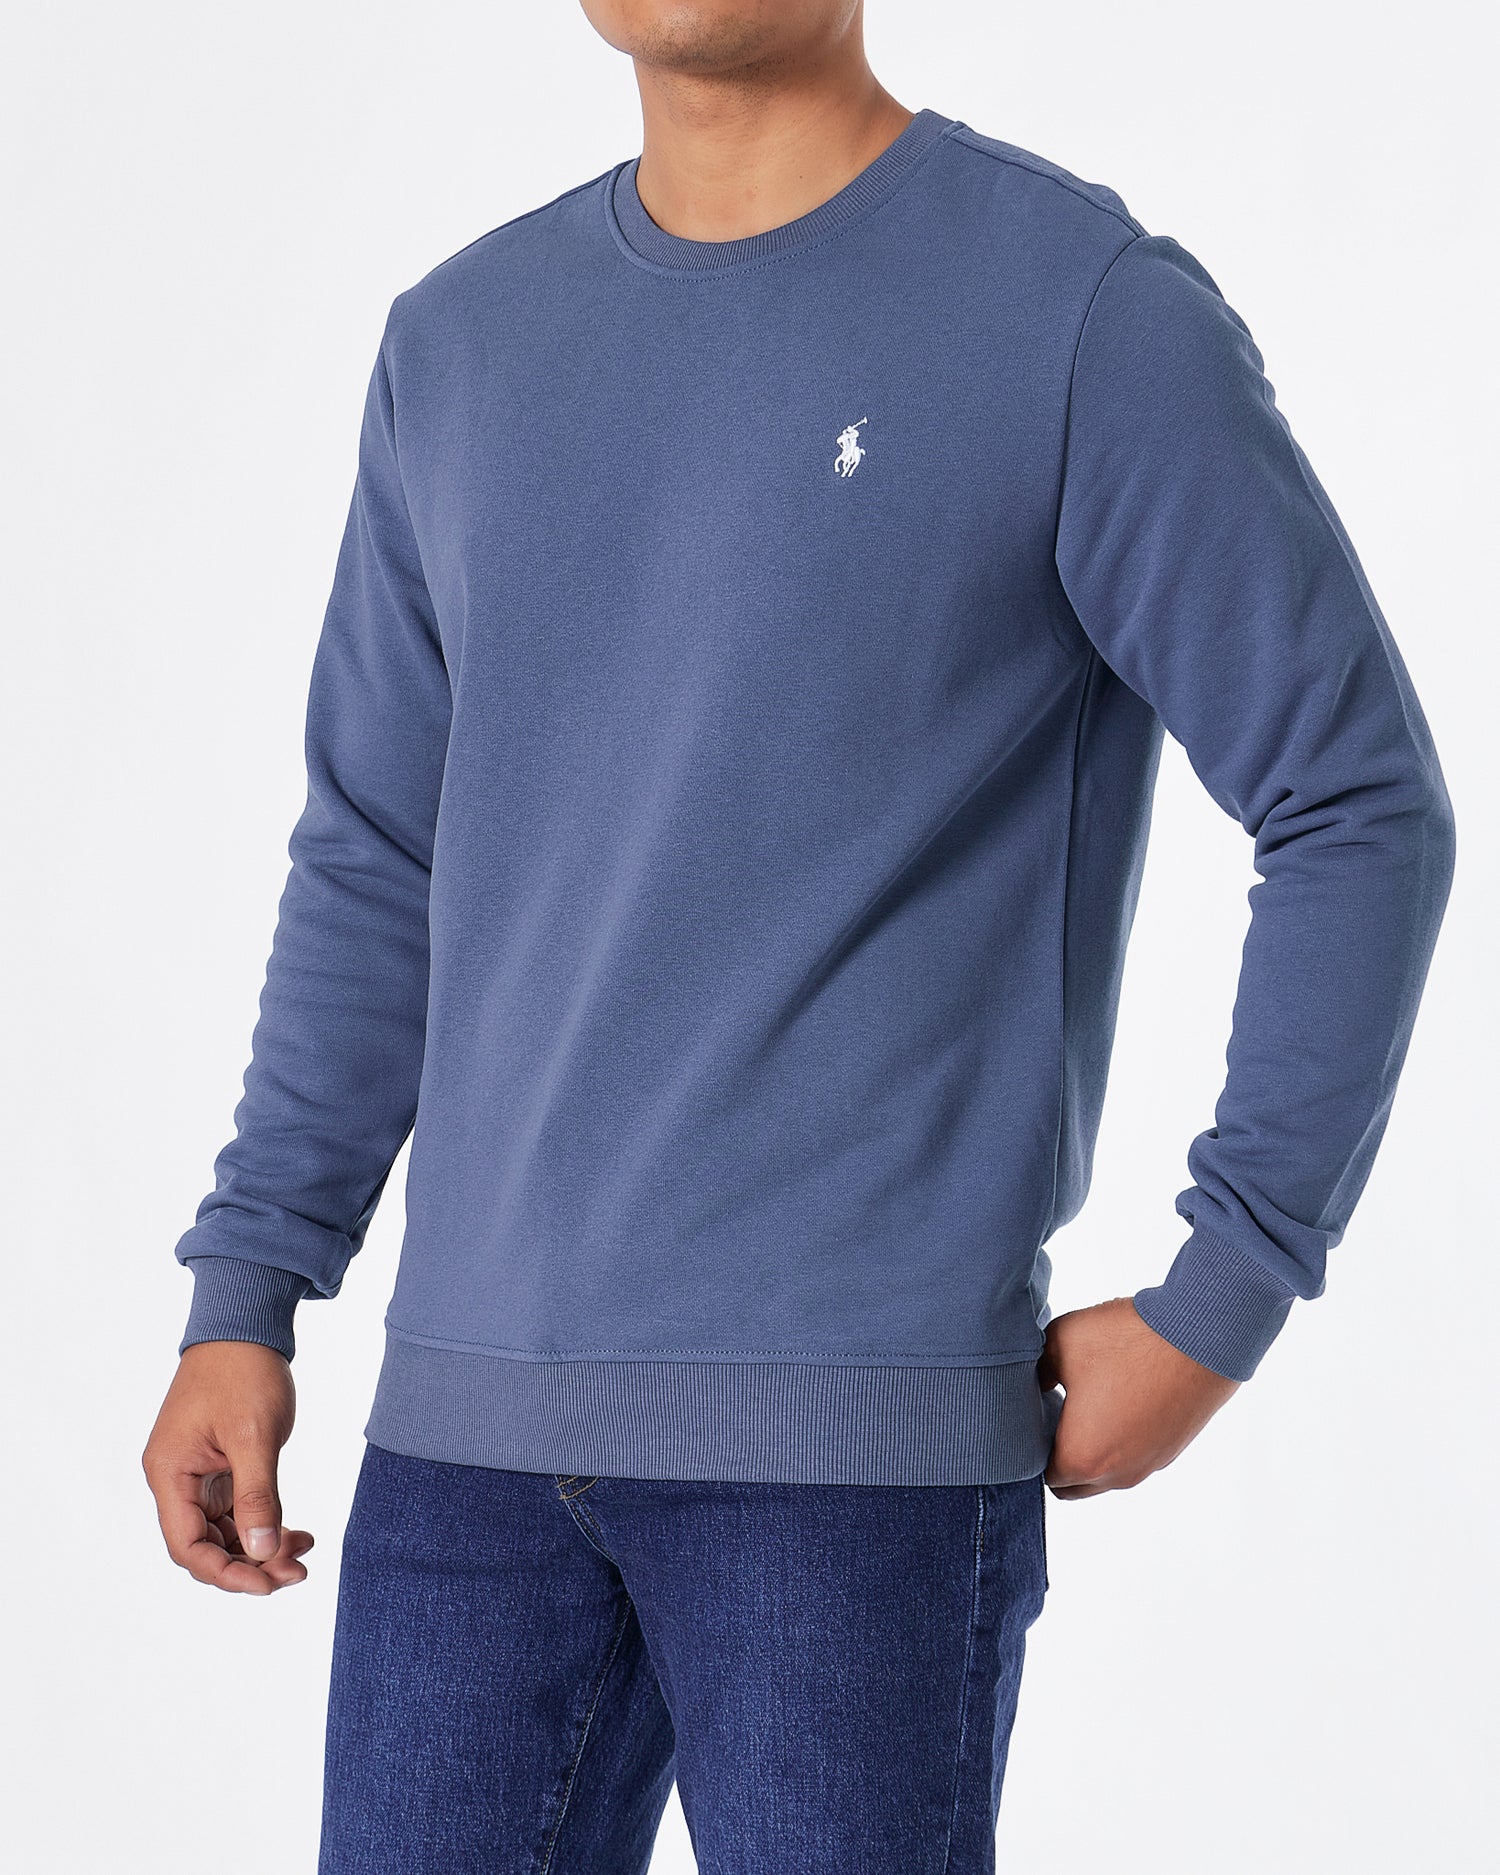 RL Plain Color Men Blue Sweater 29.90